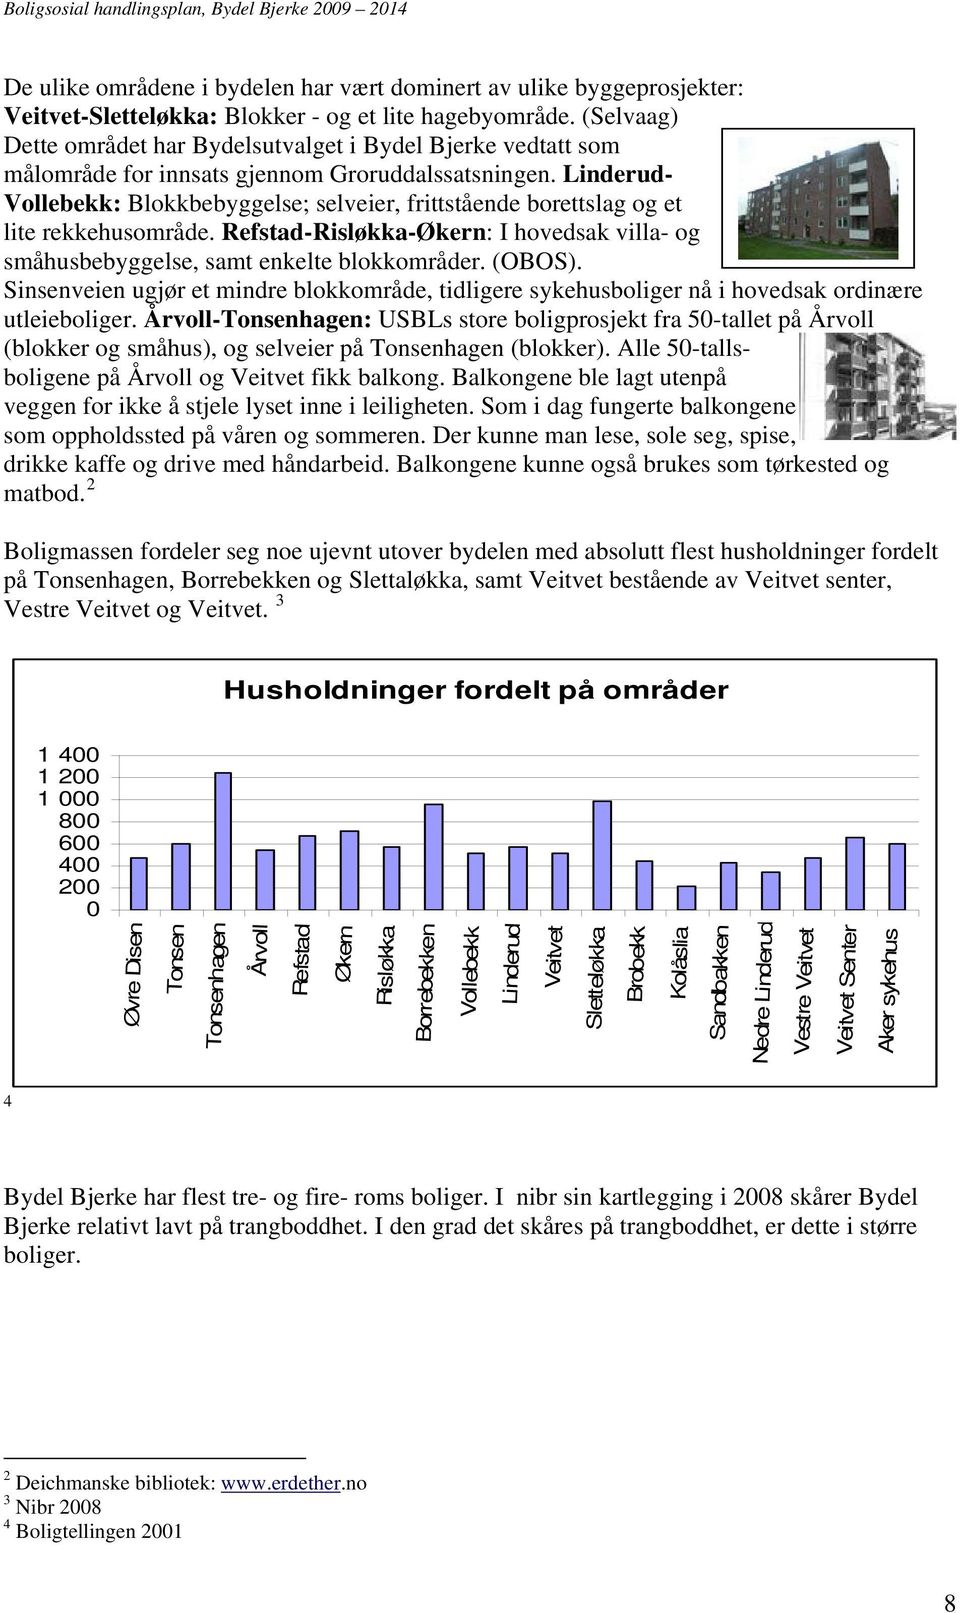 Linderud- Vollebekk: Blokkbebyggelse; selveier, frittstående borettslag og et lite rekkehusområde. Refstad-Risløkka-Økern: I hovedsak villa- og småhusbebyggelse, samt enkelte blokkområder. (OBOS).